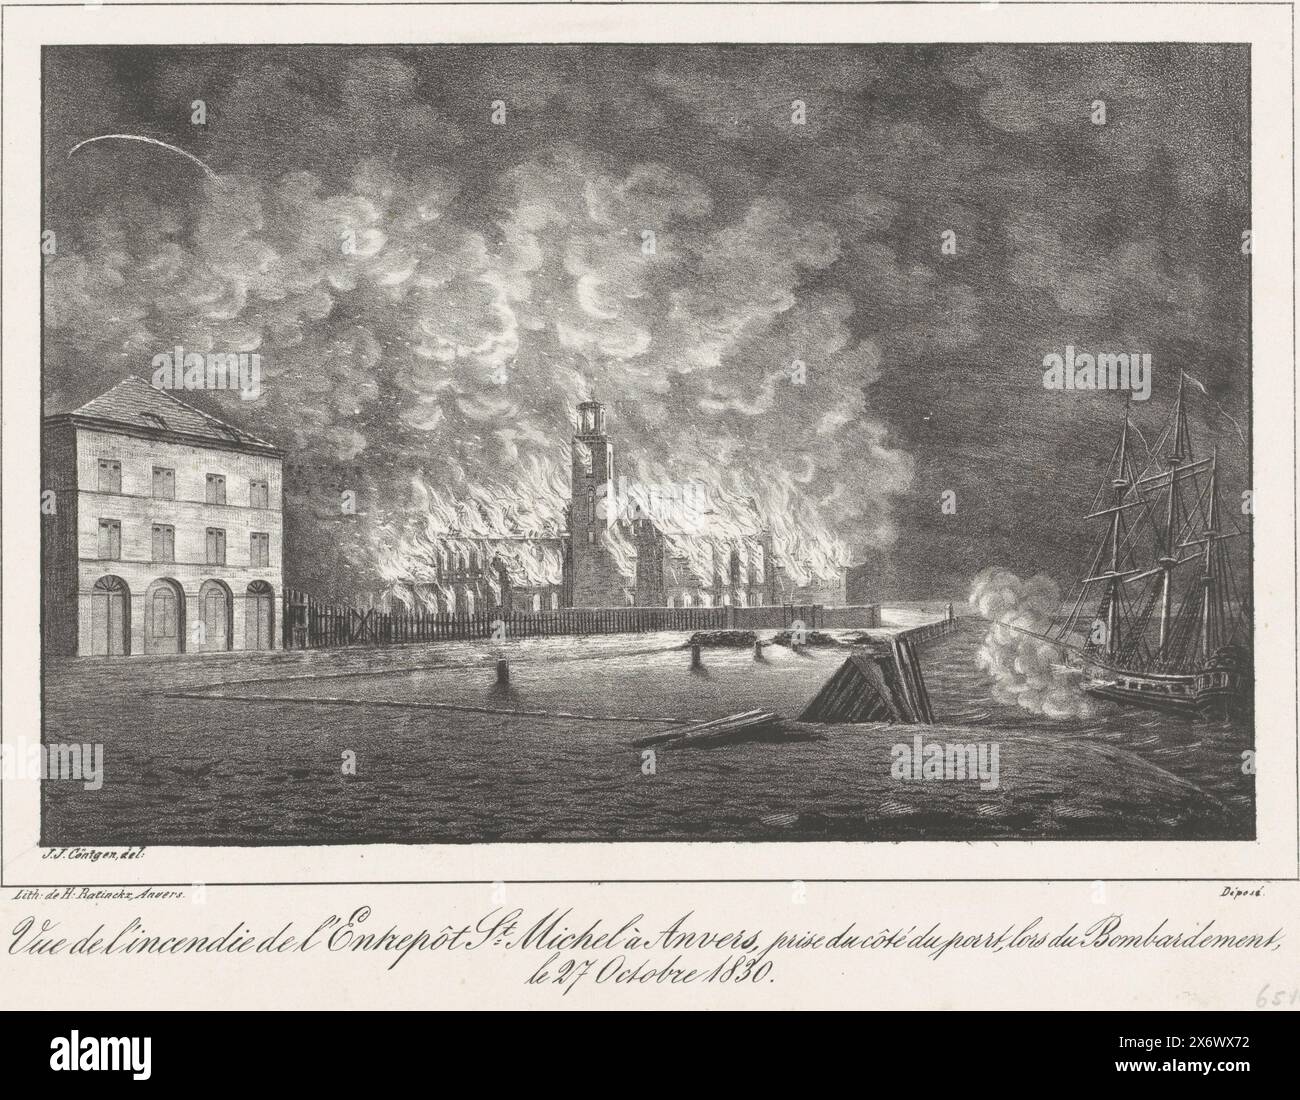 Entrepot on Fire, 1830, vue de l'incendie de l'Entrepôt constituée Michel à Anvers. au moment de l'incendie fait par le bombardement dans la nuit du 27 au 28 8.bre 1830 (titre sur objet), dix-neuf planches des combats à Anvers, 26 au 27 octobre 1830 (titre de la série), incendie dans l'entrepôt de l'abbaye de Michel lors du bombardement d'Anvers le 27 octobre 1830. Sur la droite, un des navires hollandais bombarde la ville. Fait partie d'une série de dix-neuf planches des combats à Anvers, du 26 au 27 octobre 1830., imprimeur, imprimeur : J.J. Cöntgen, (mentionné sur l'objet), imprimeur : Henry Ratinckx, (mentionné sur Banque D'Images